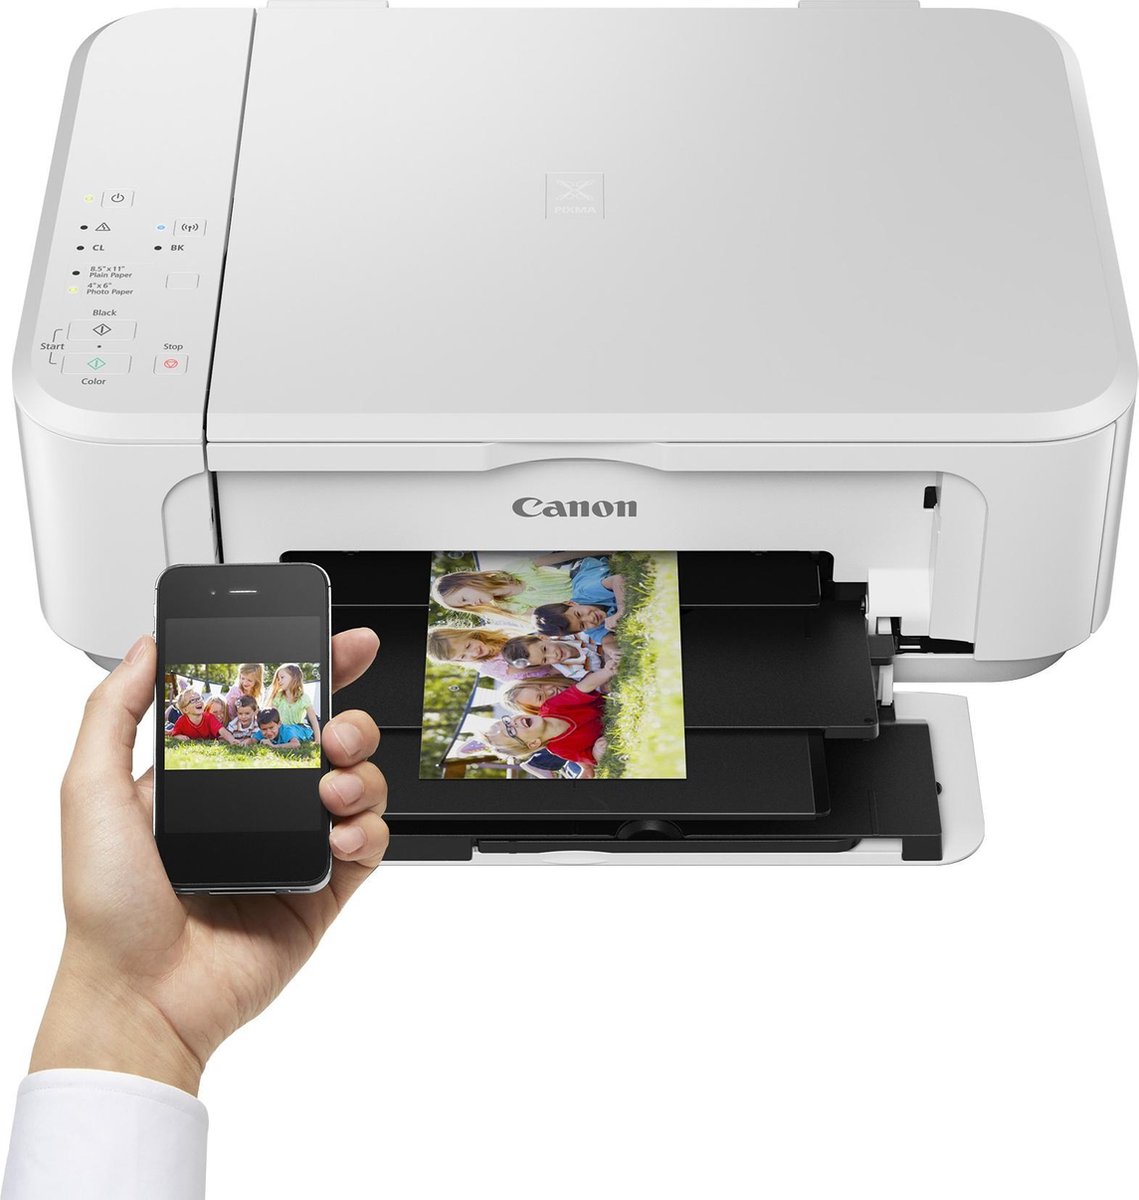 дешевый принтер для фото